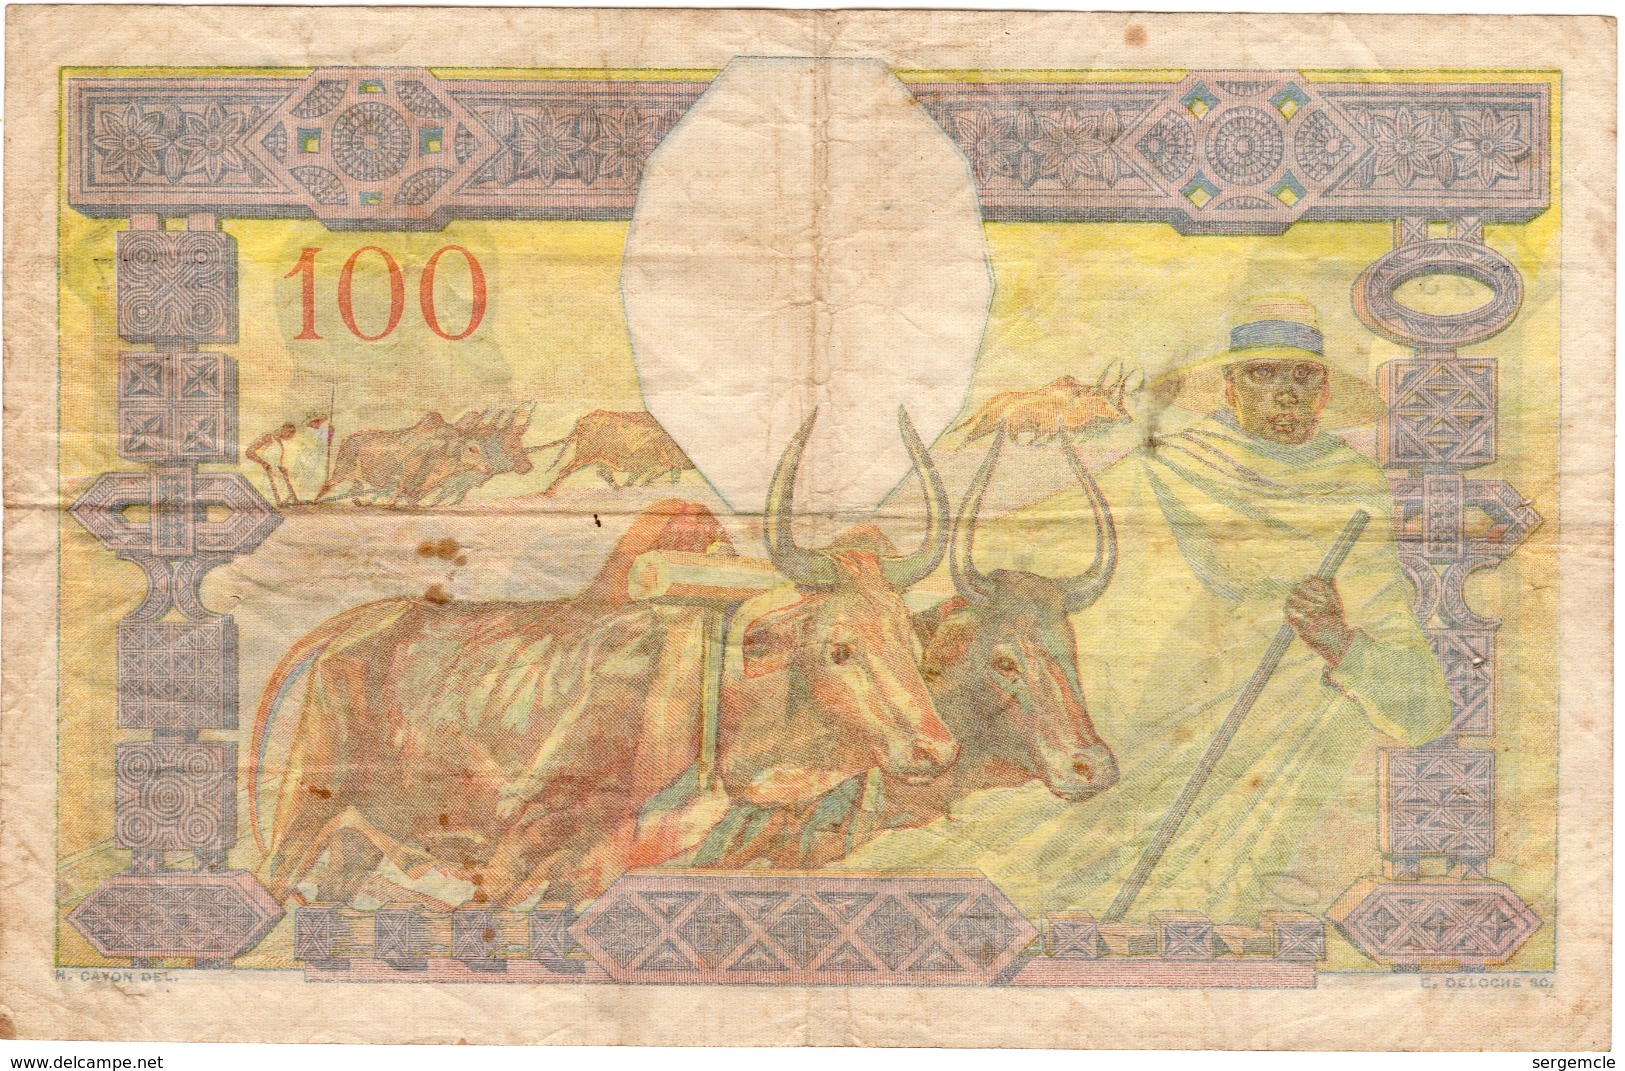 Très Beau Billet De 100 Francs Non Daté (1937) BANQUE DE MADAGASCAR - Madagascar